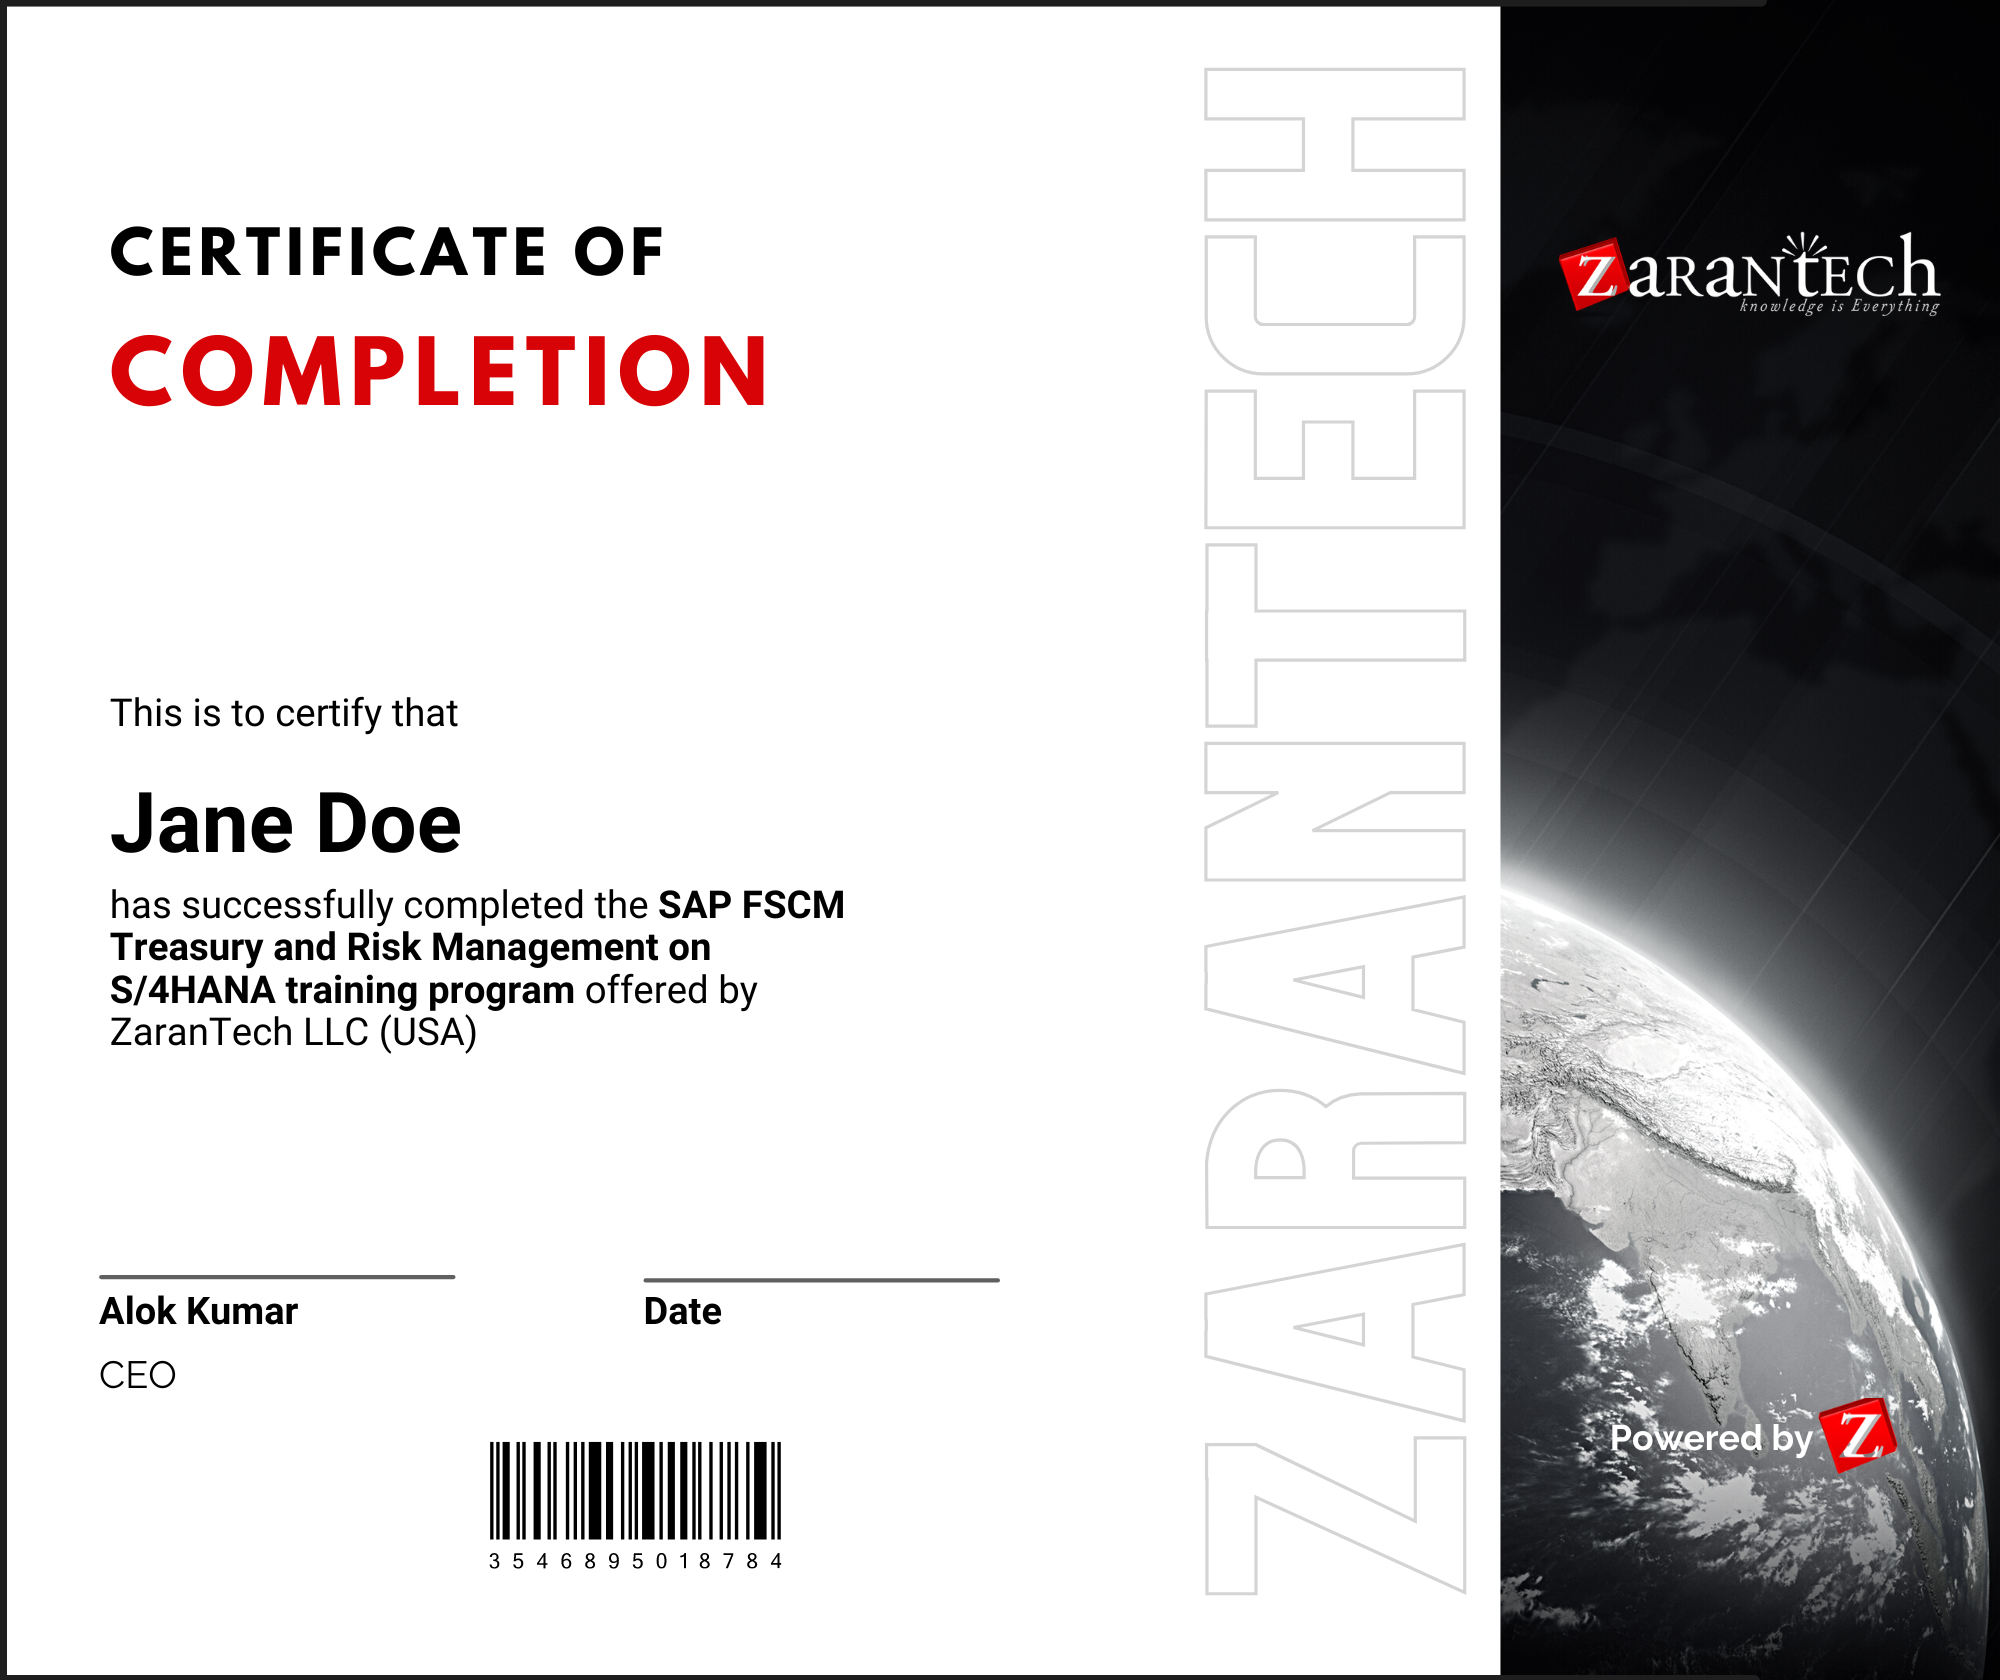 SAP FSCM TRM on S/4HANA - Certificate of Completion